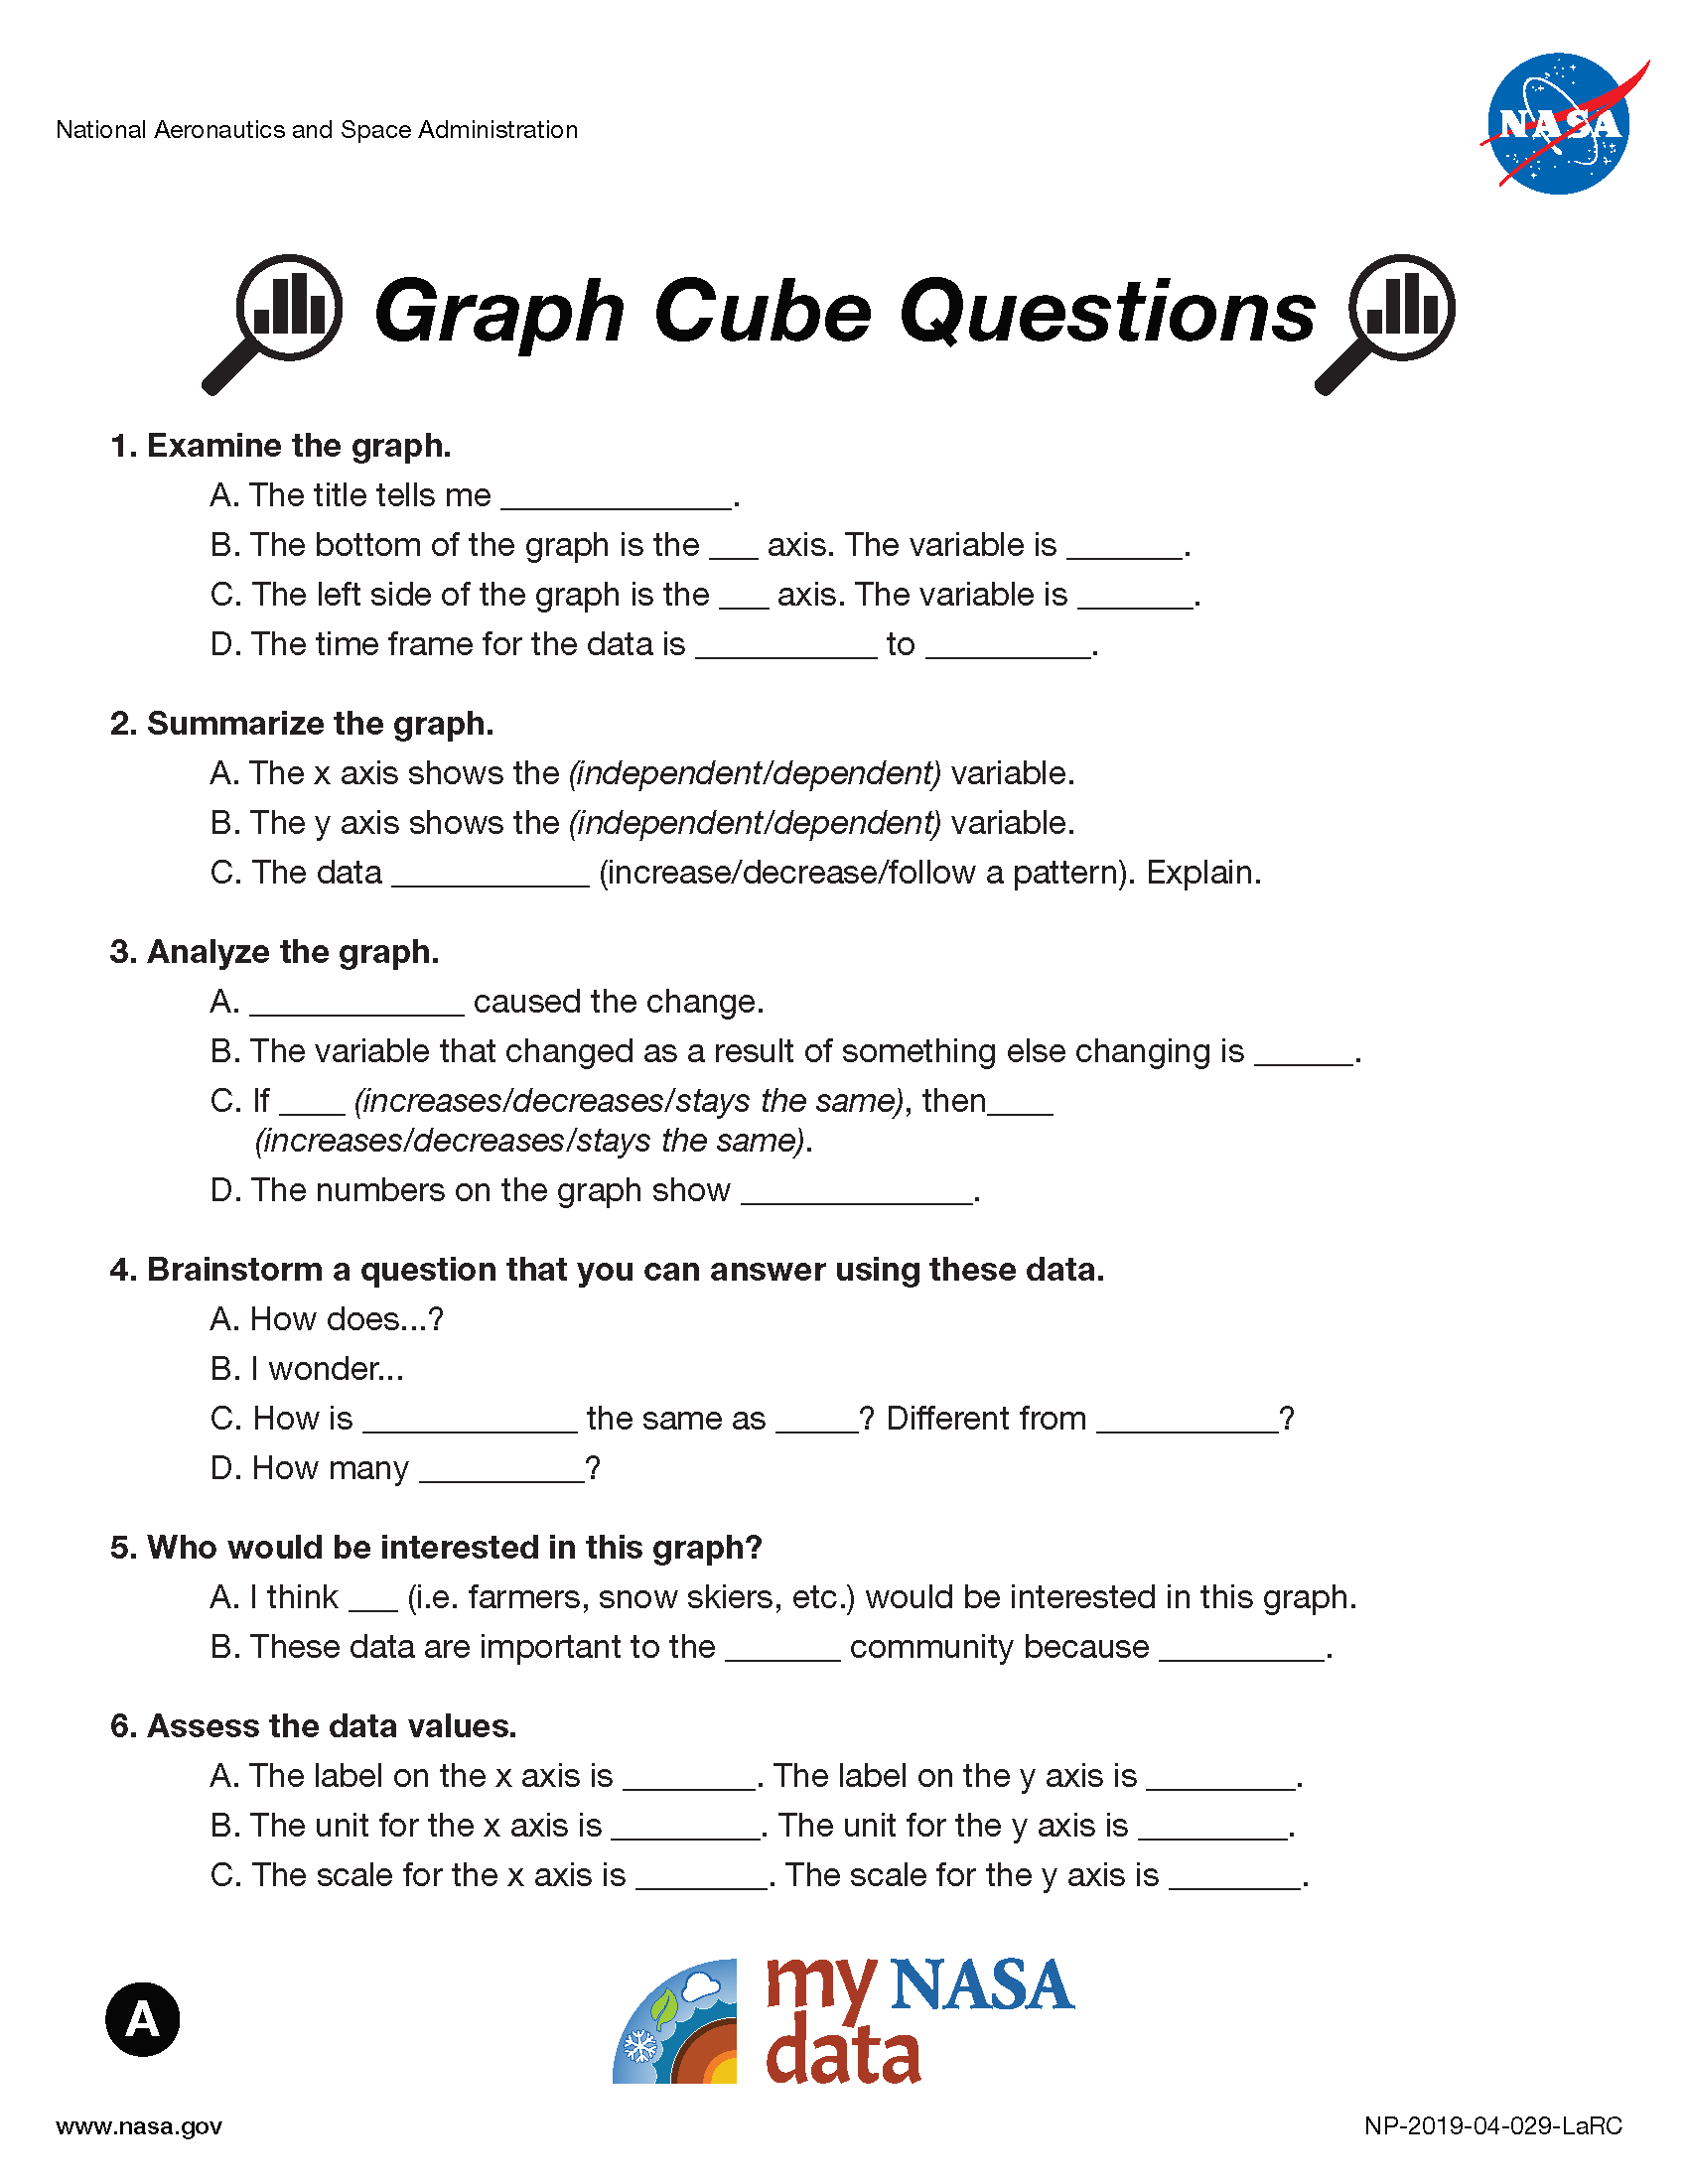 My NASA Data - Data Literacy Cubes - Graph Cube Questions - Beginner